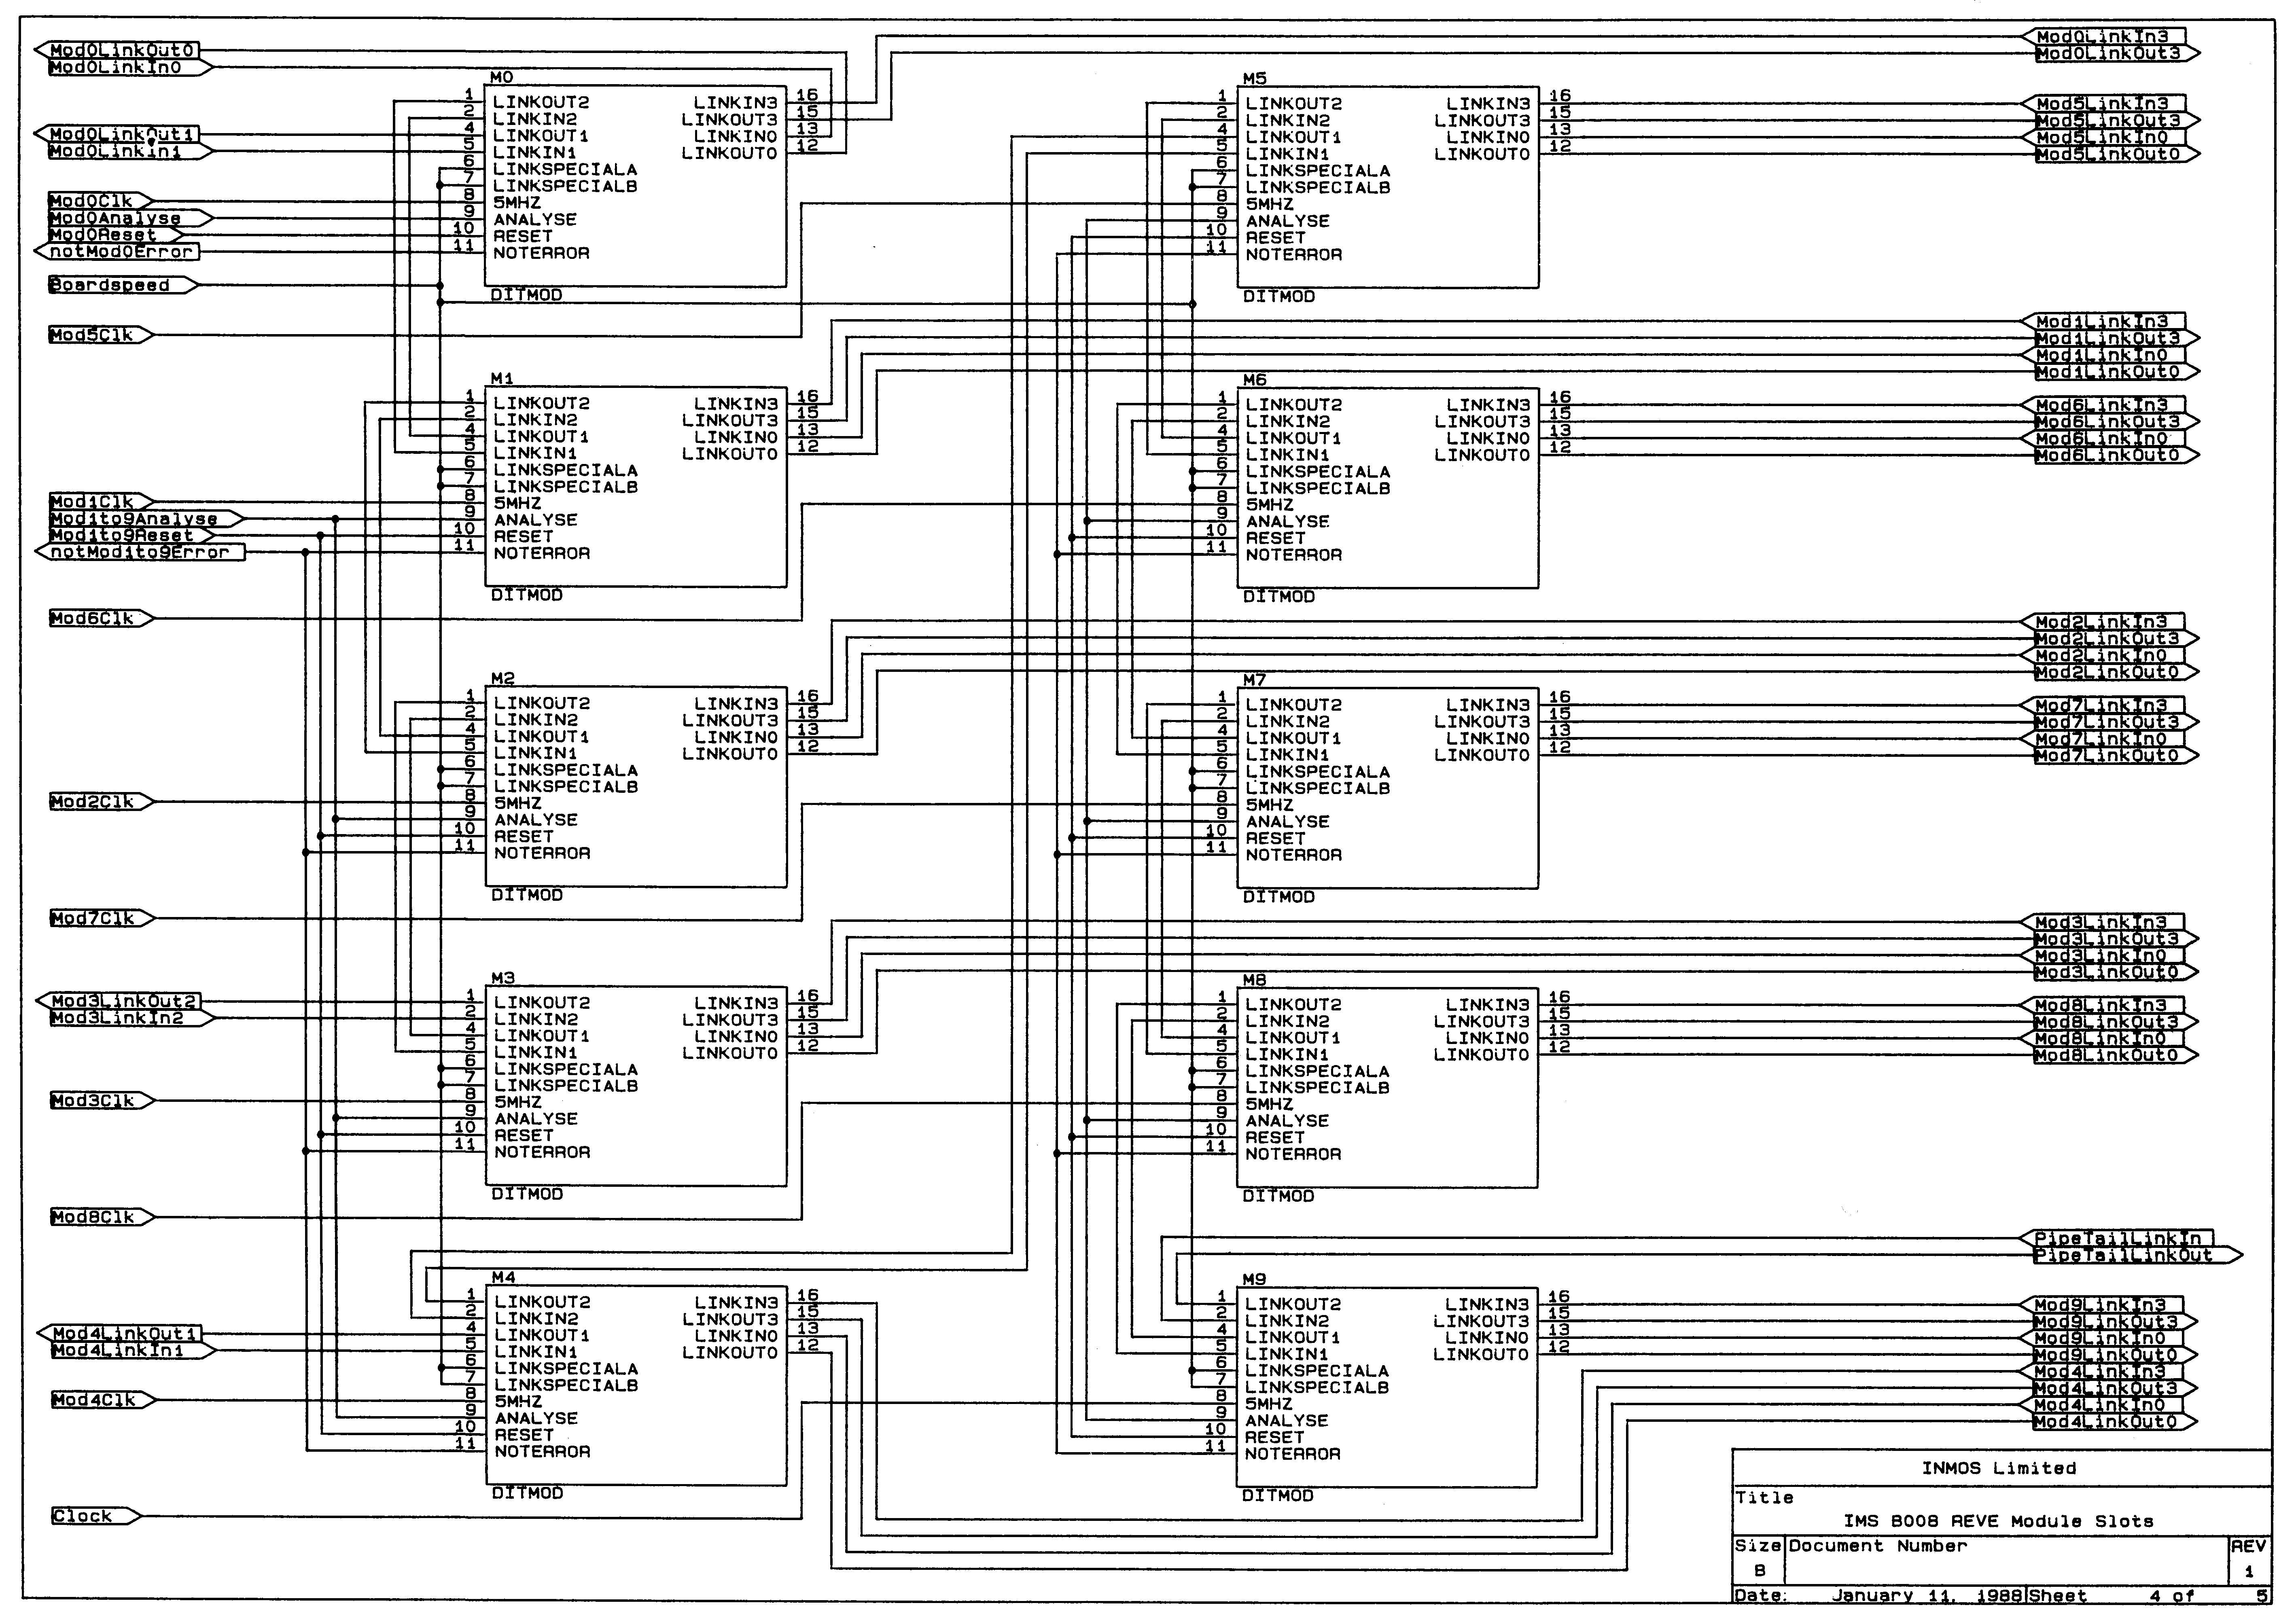 Circuit Diagram 4 of 5